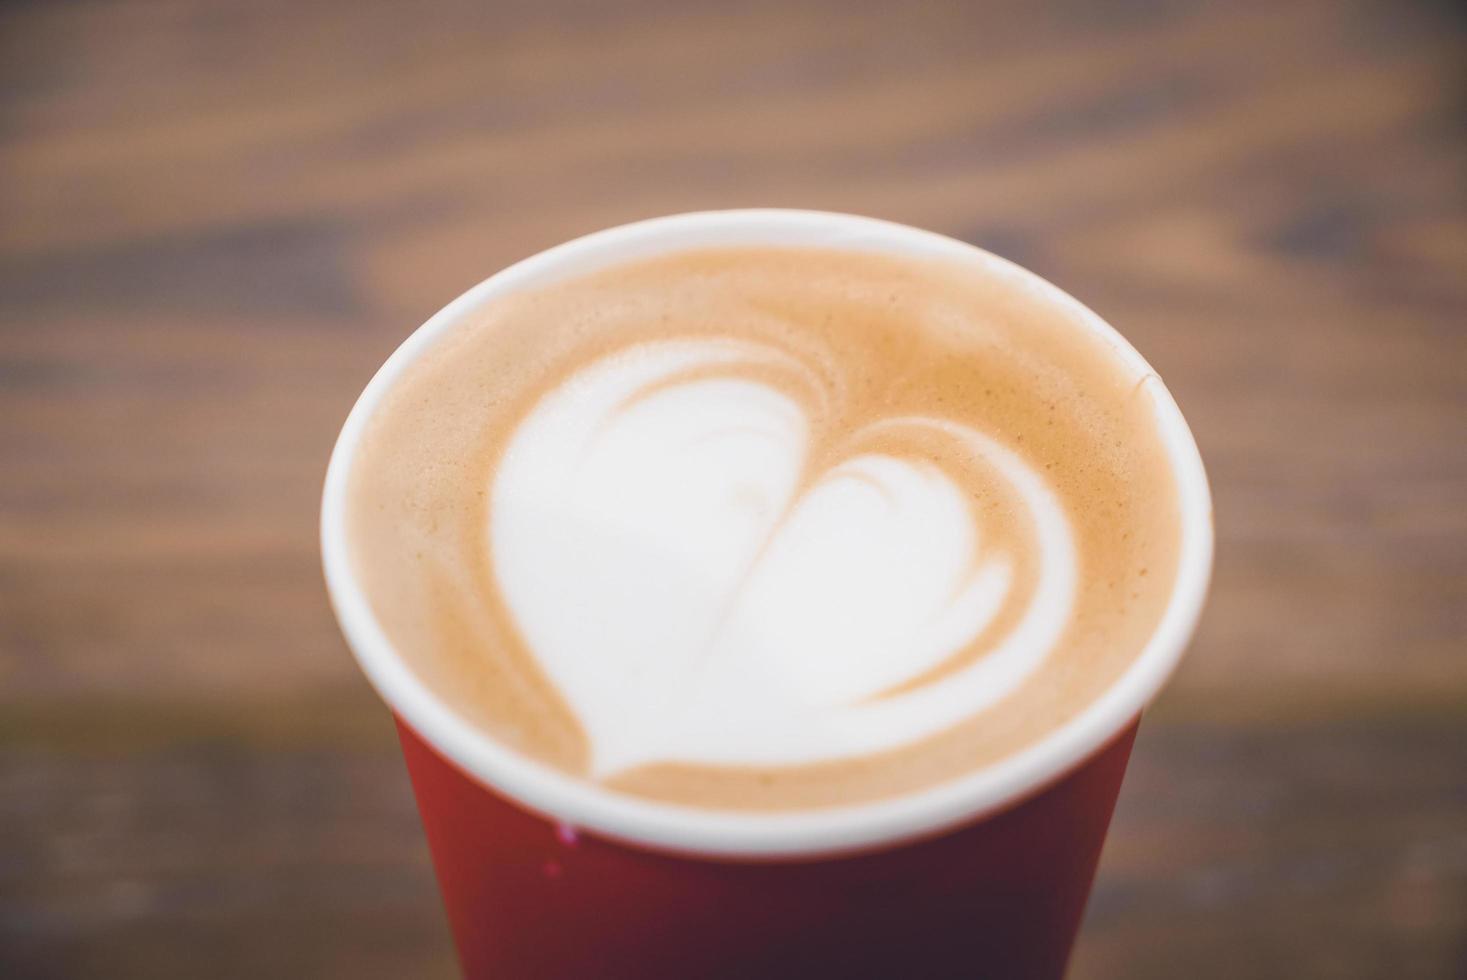 hjärta latte kaffe i röd kopp foto